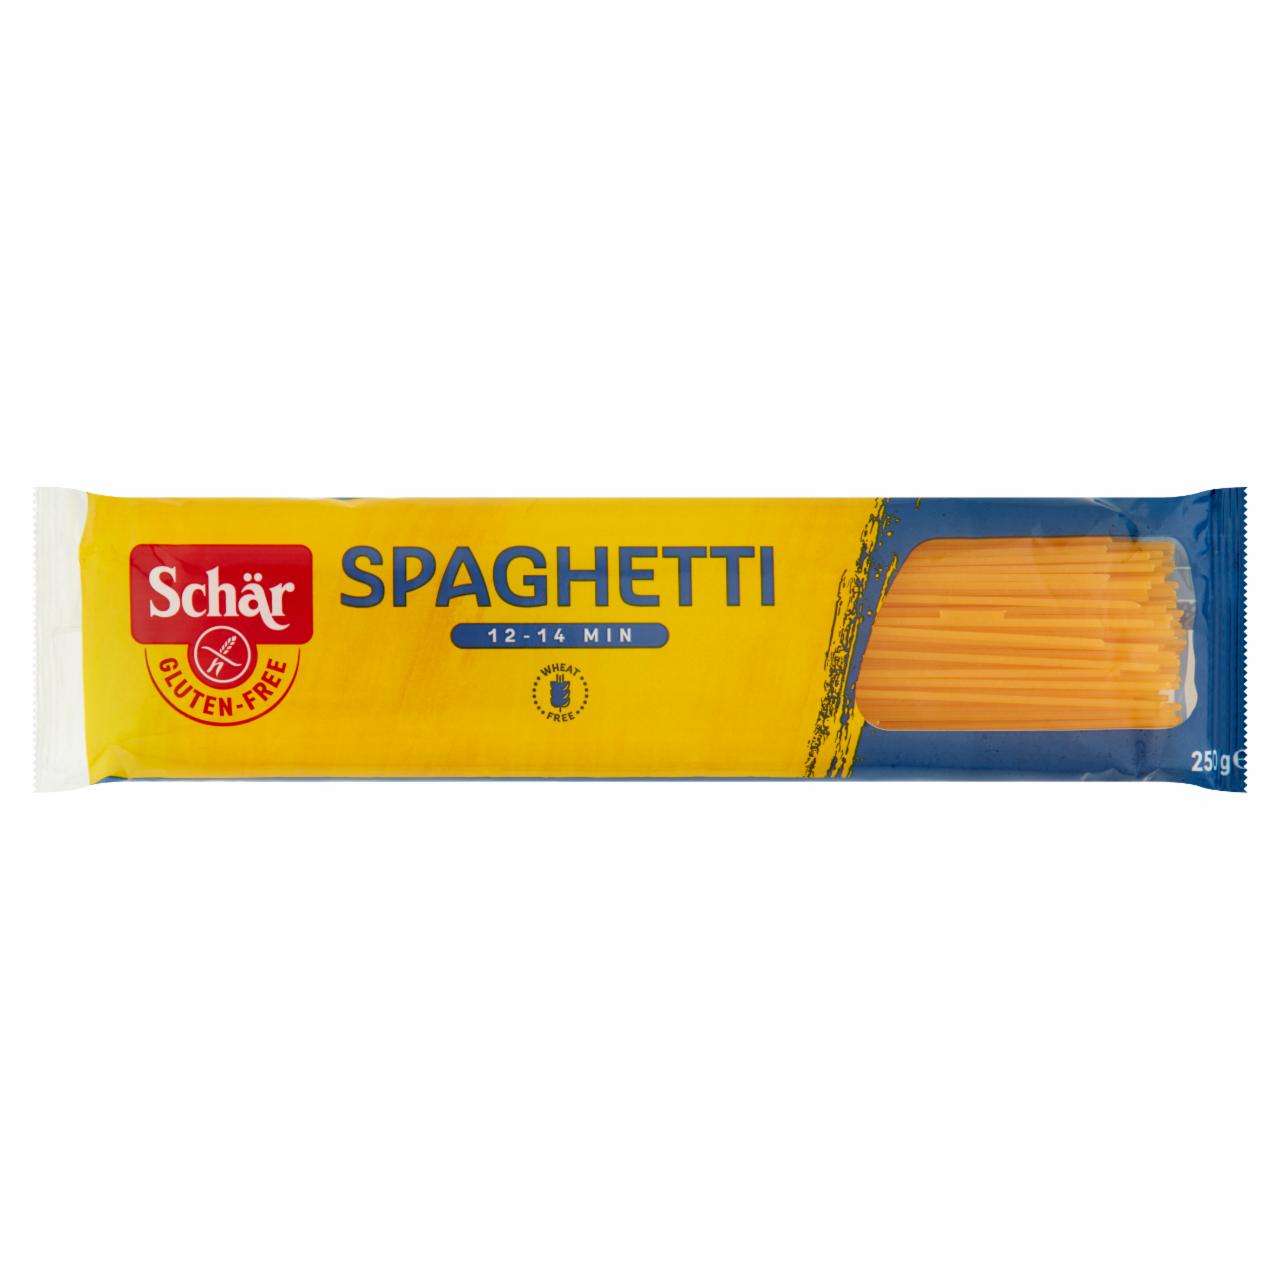 Képek - Schär Spaghetti gluténmentes tészta 250 g